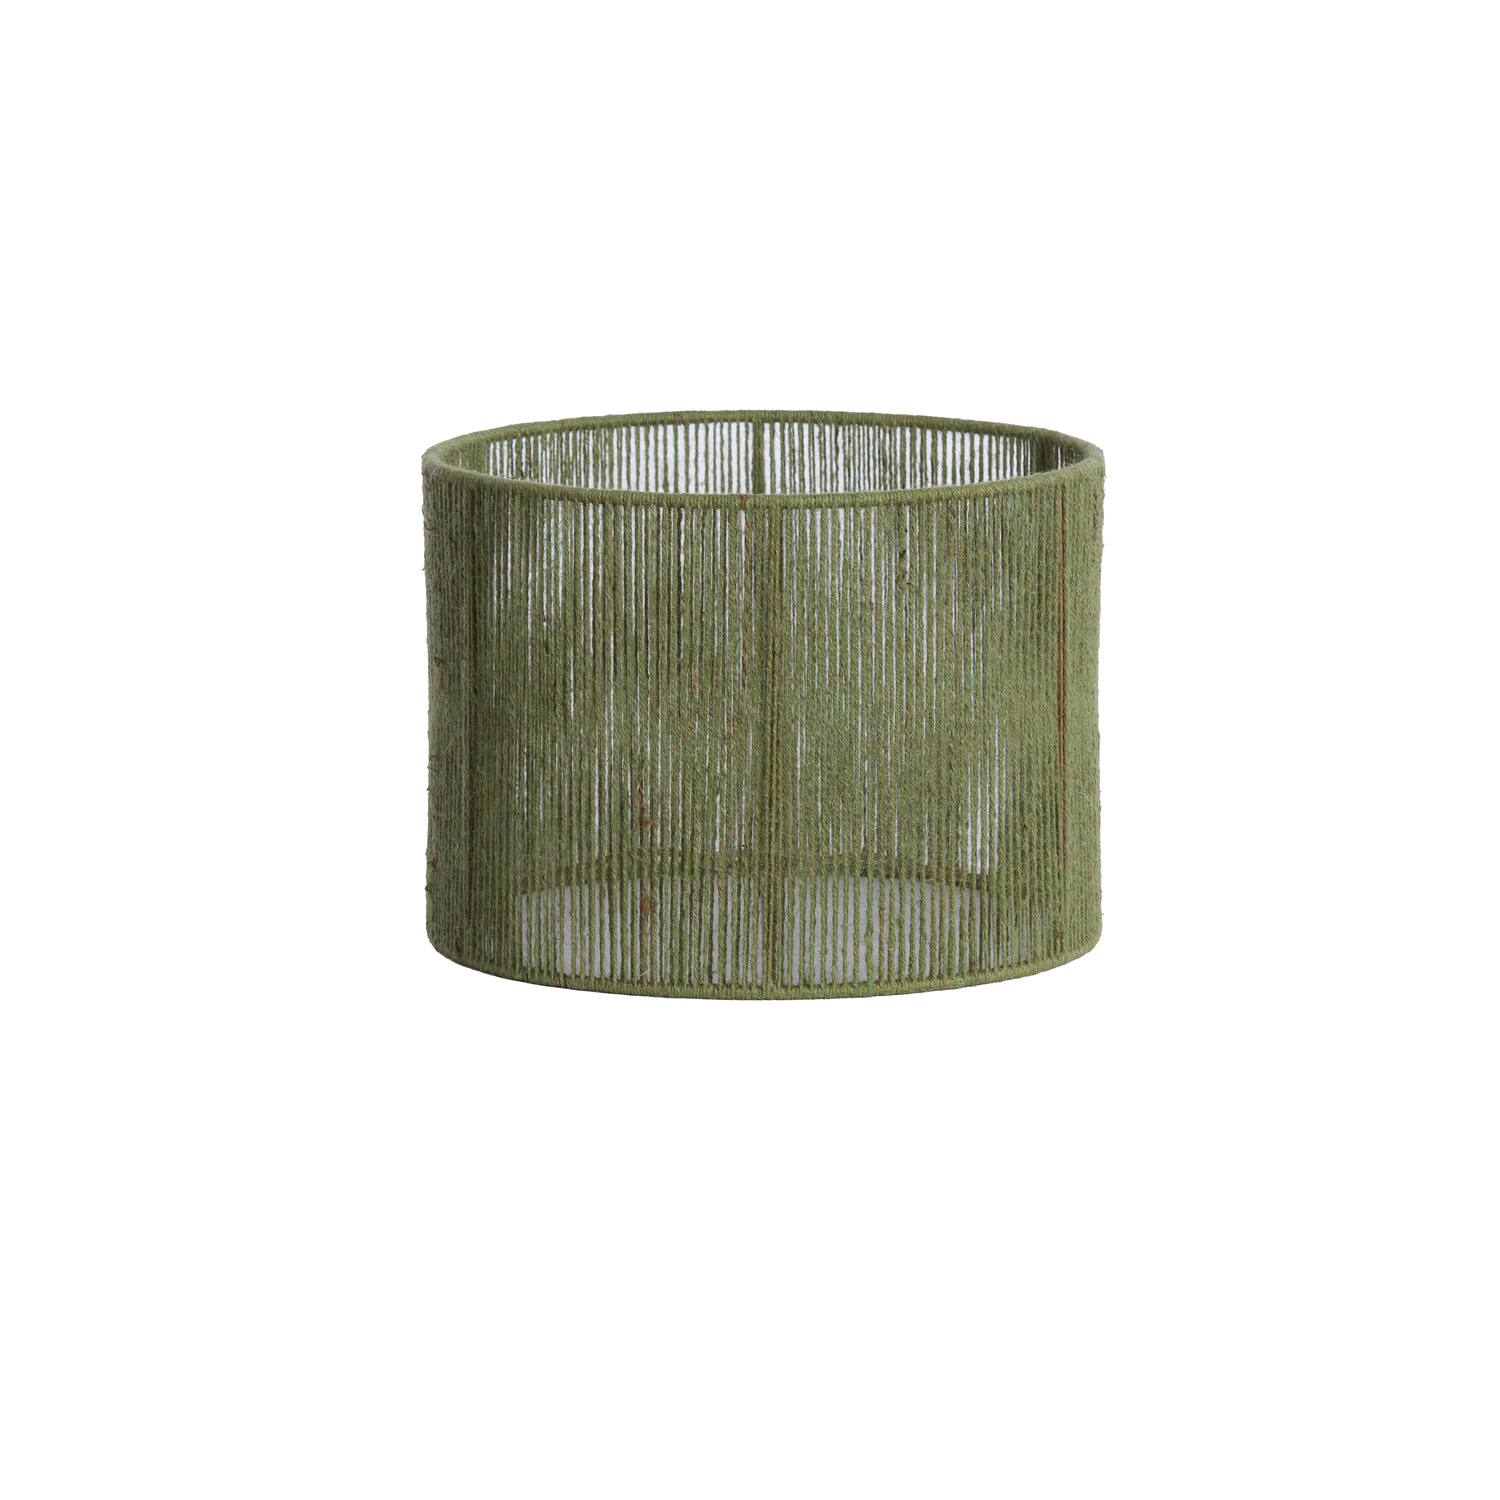 Shade cylinder 35-35-25 cm TOSSA jute green